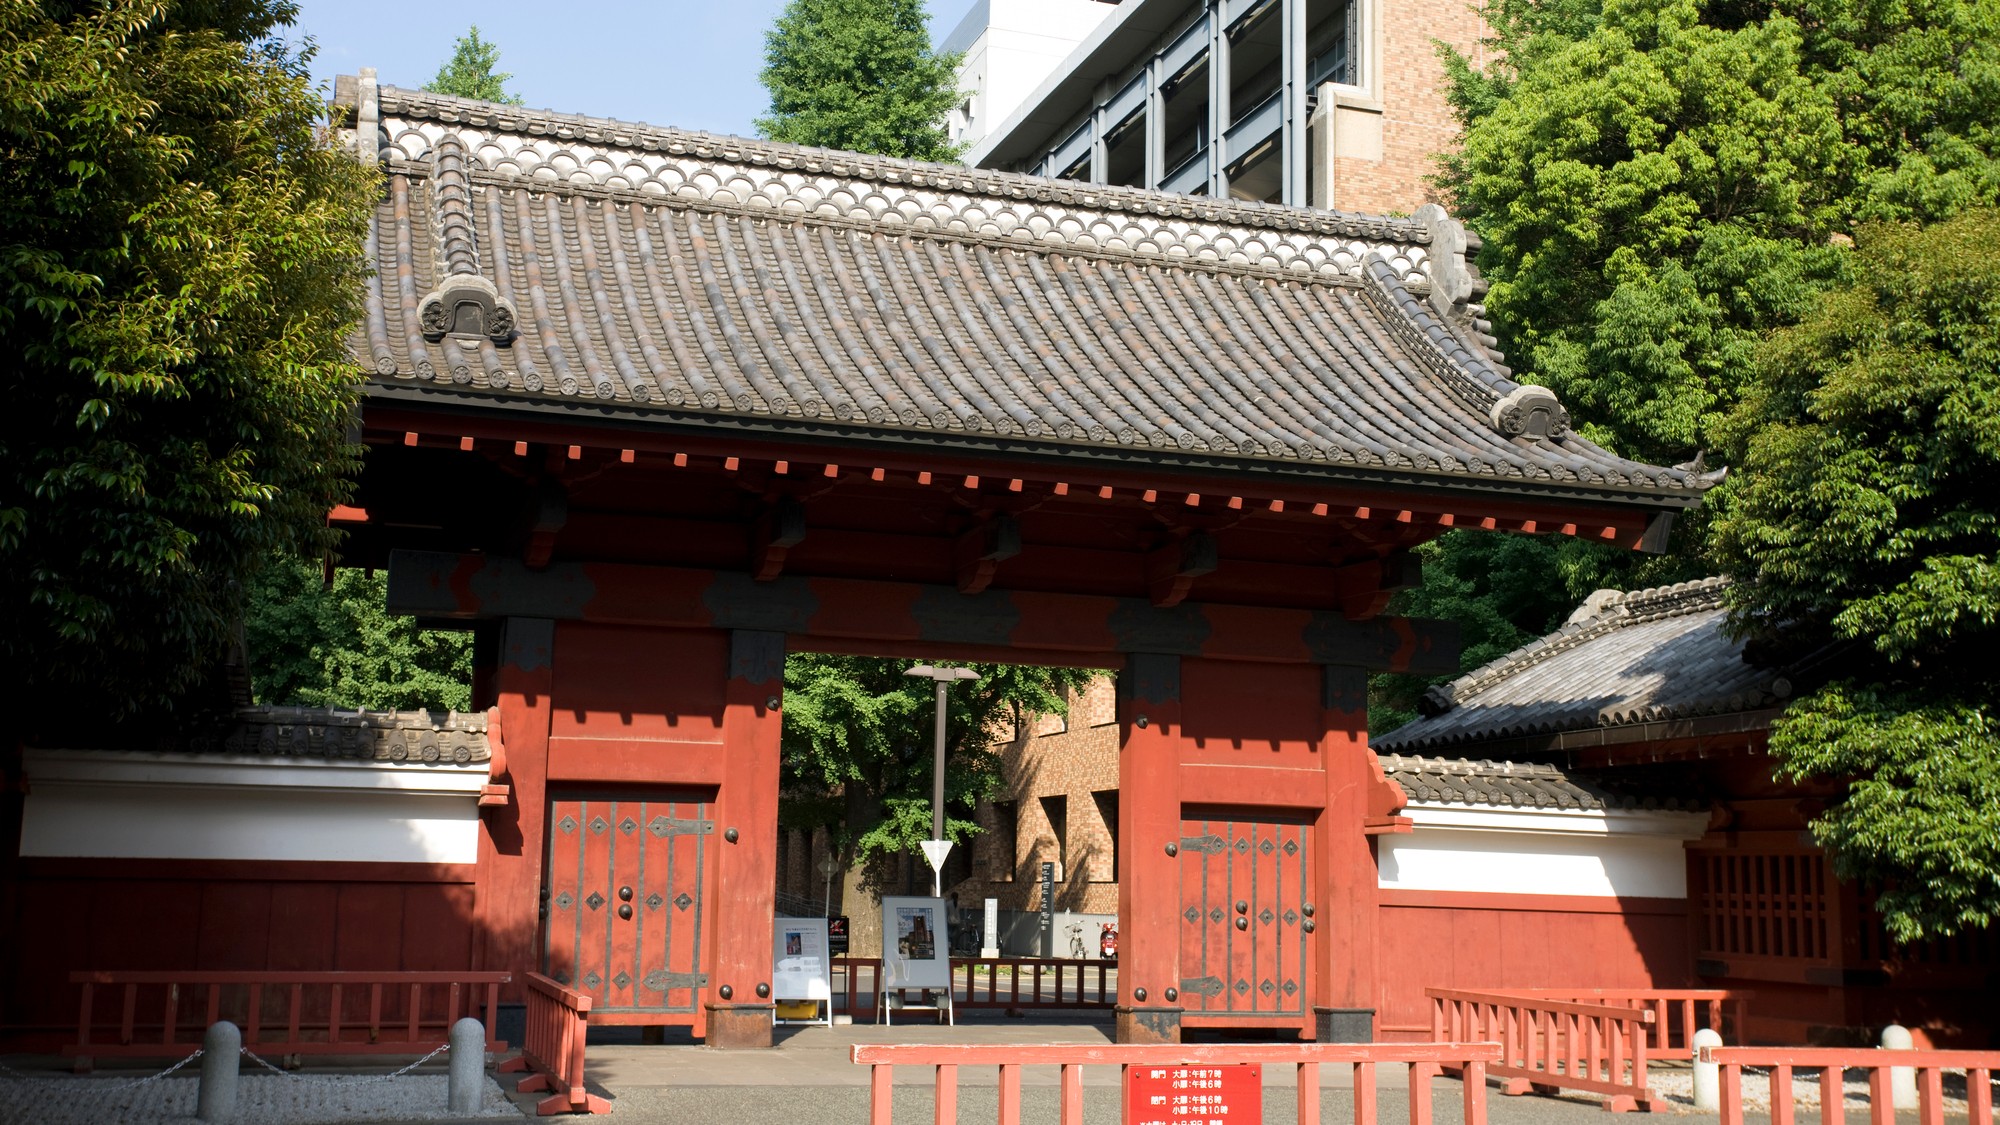 東京大学合格率…「開成、麻布、武蔵」を上回る「卒業生の4割が東大生」という最強中高一貫校